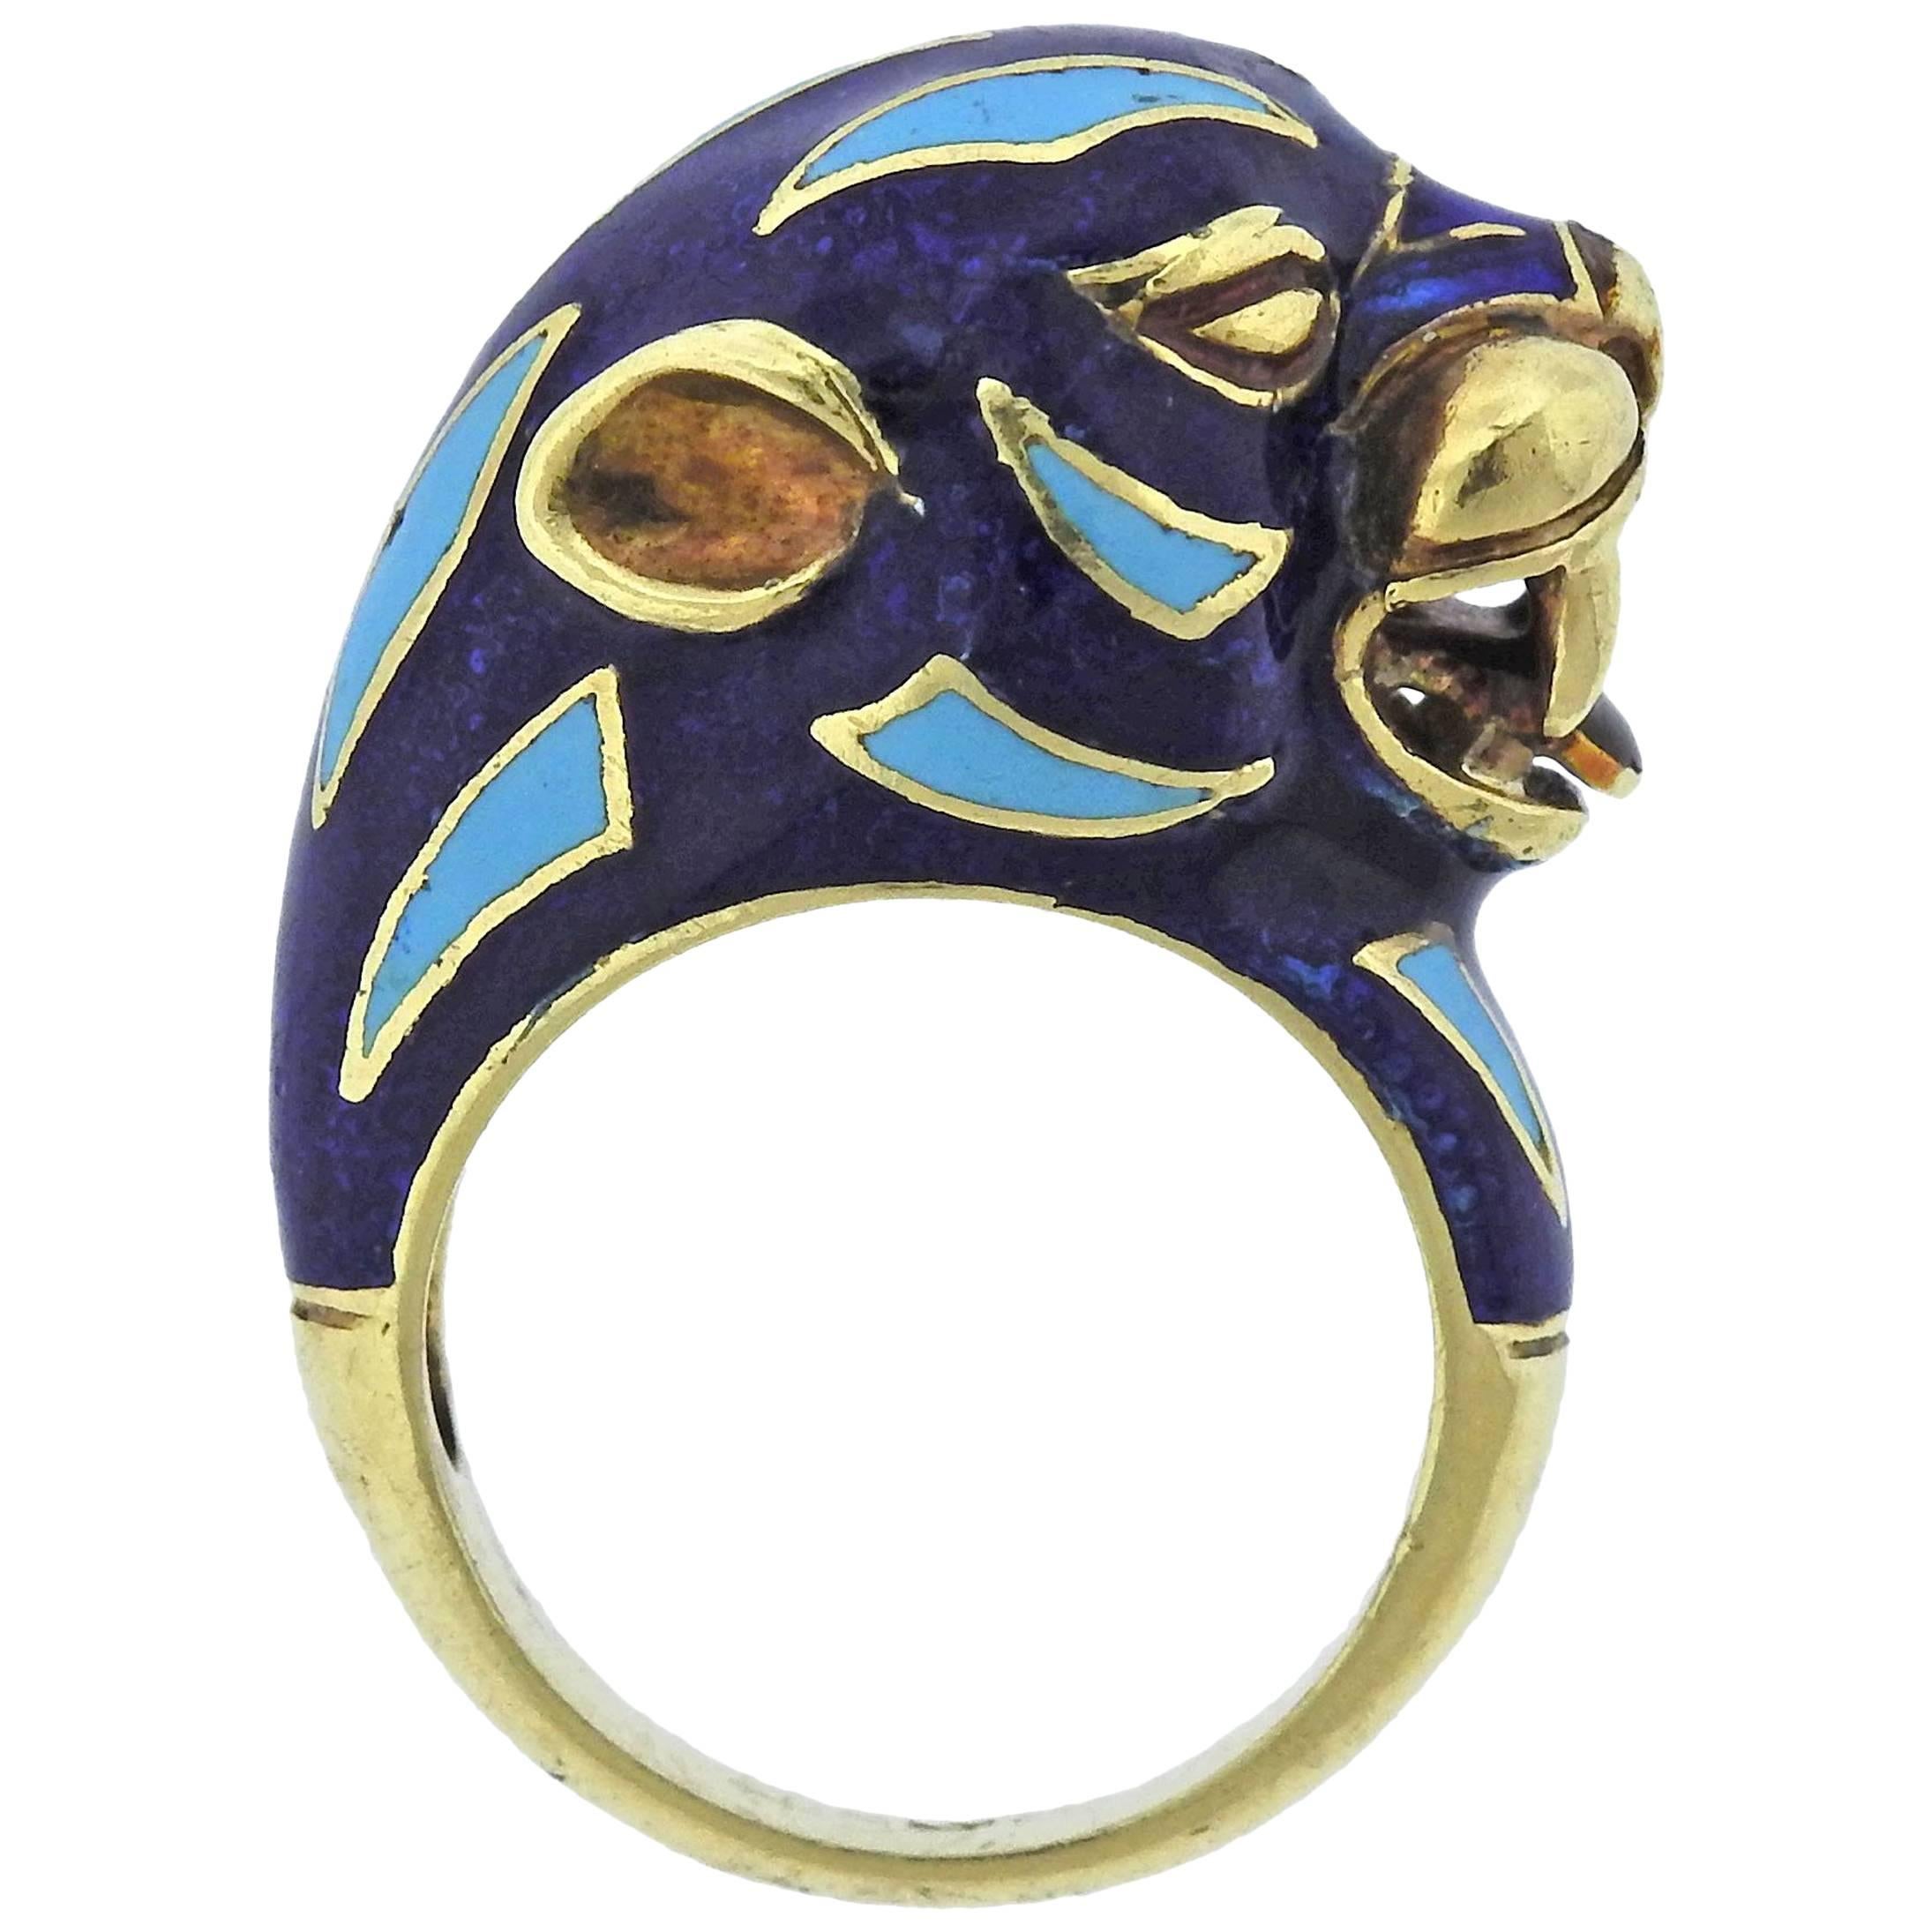 Frascarolo Enamel Gold Animal Motif Ring